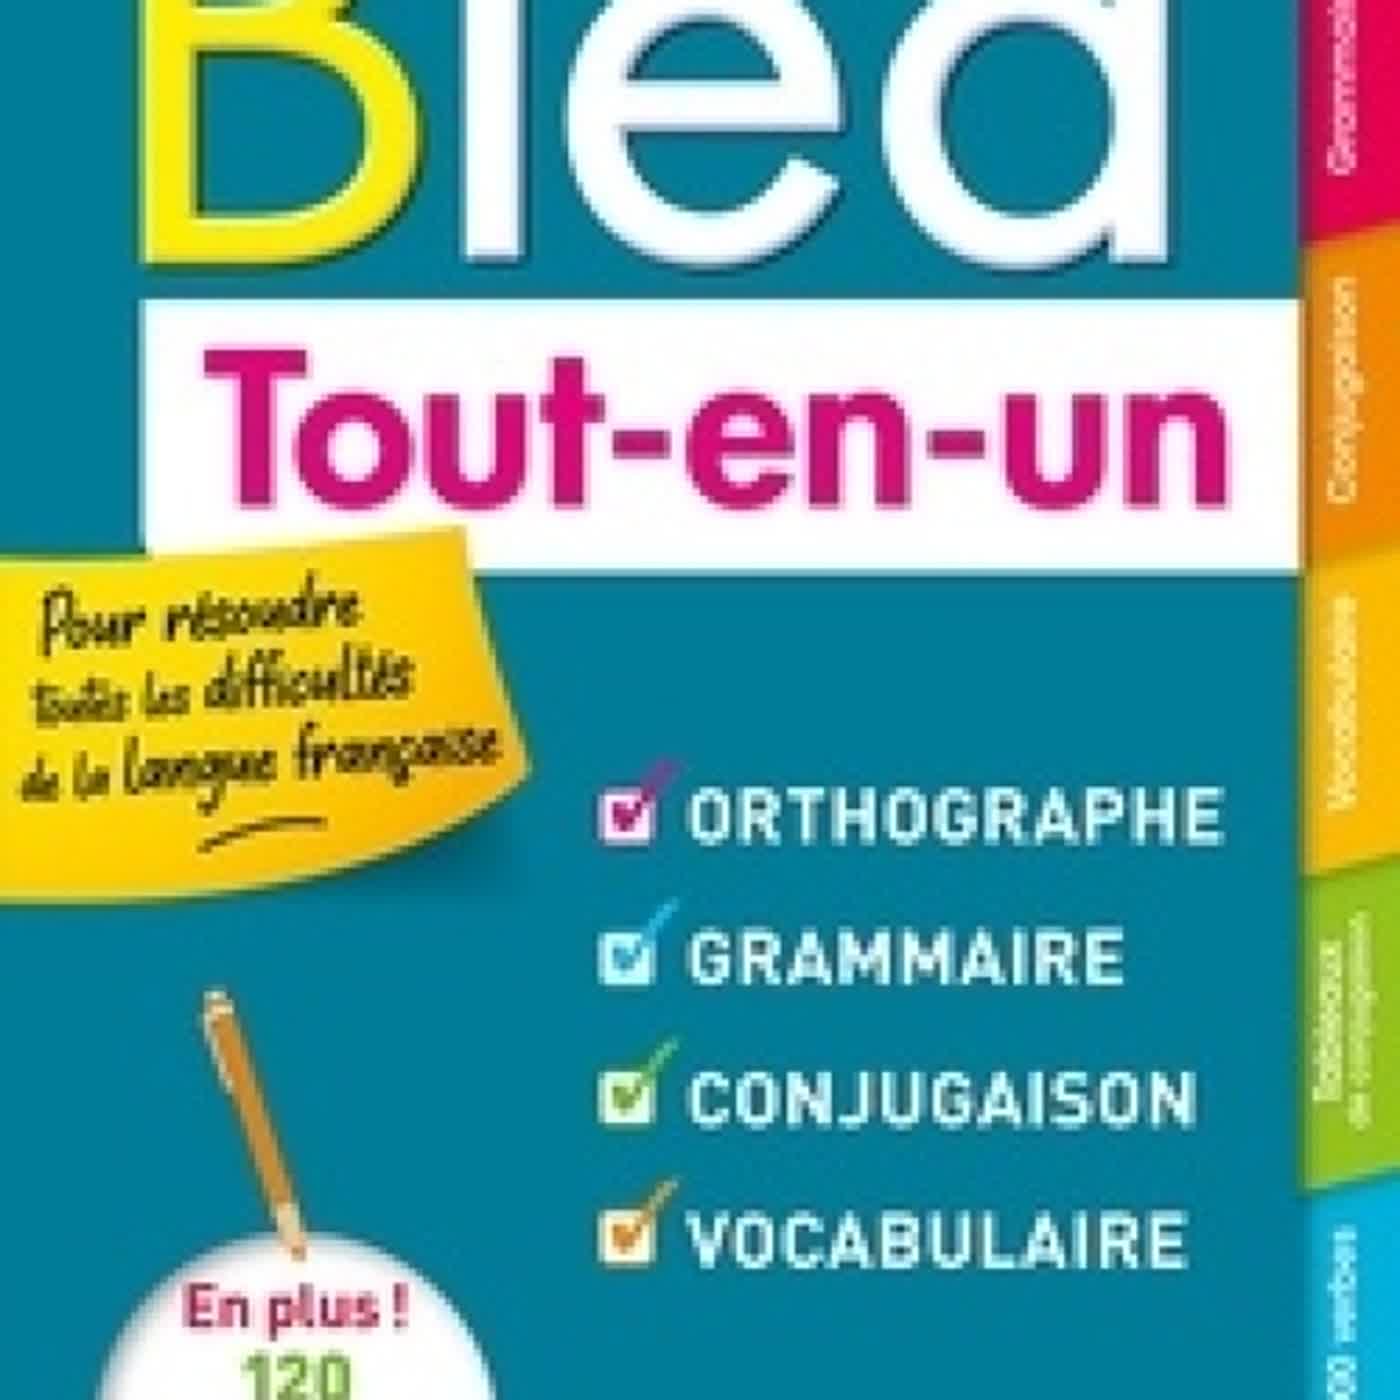 {epub download} Bled Tout-en-un  - Orthographe, grammaire, conjugaison, vocabulaire